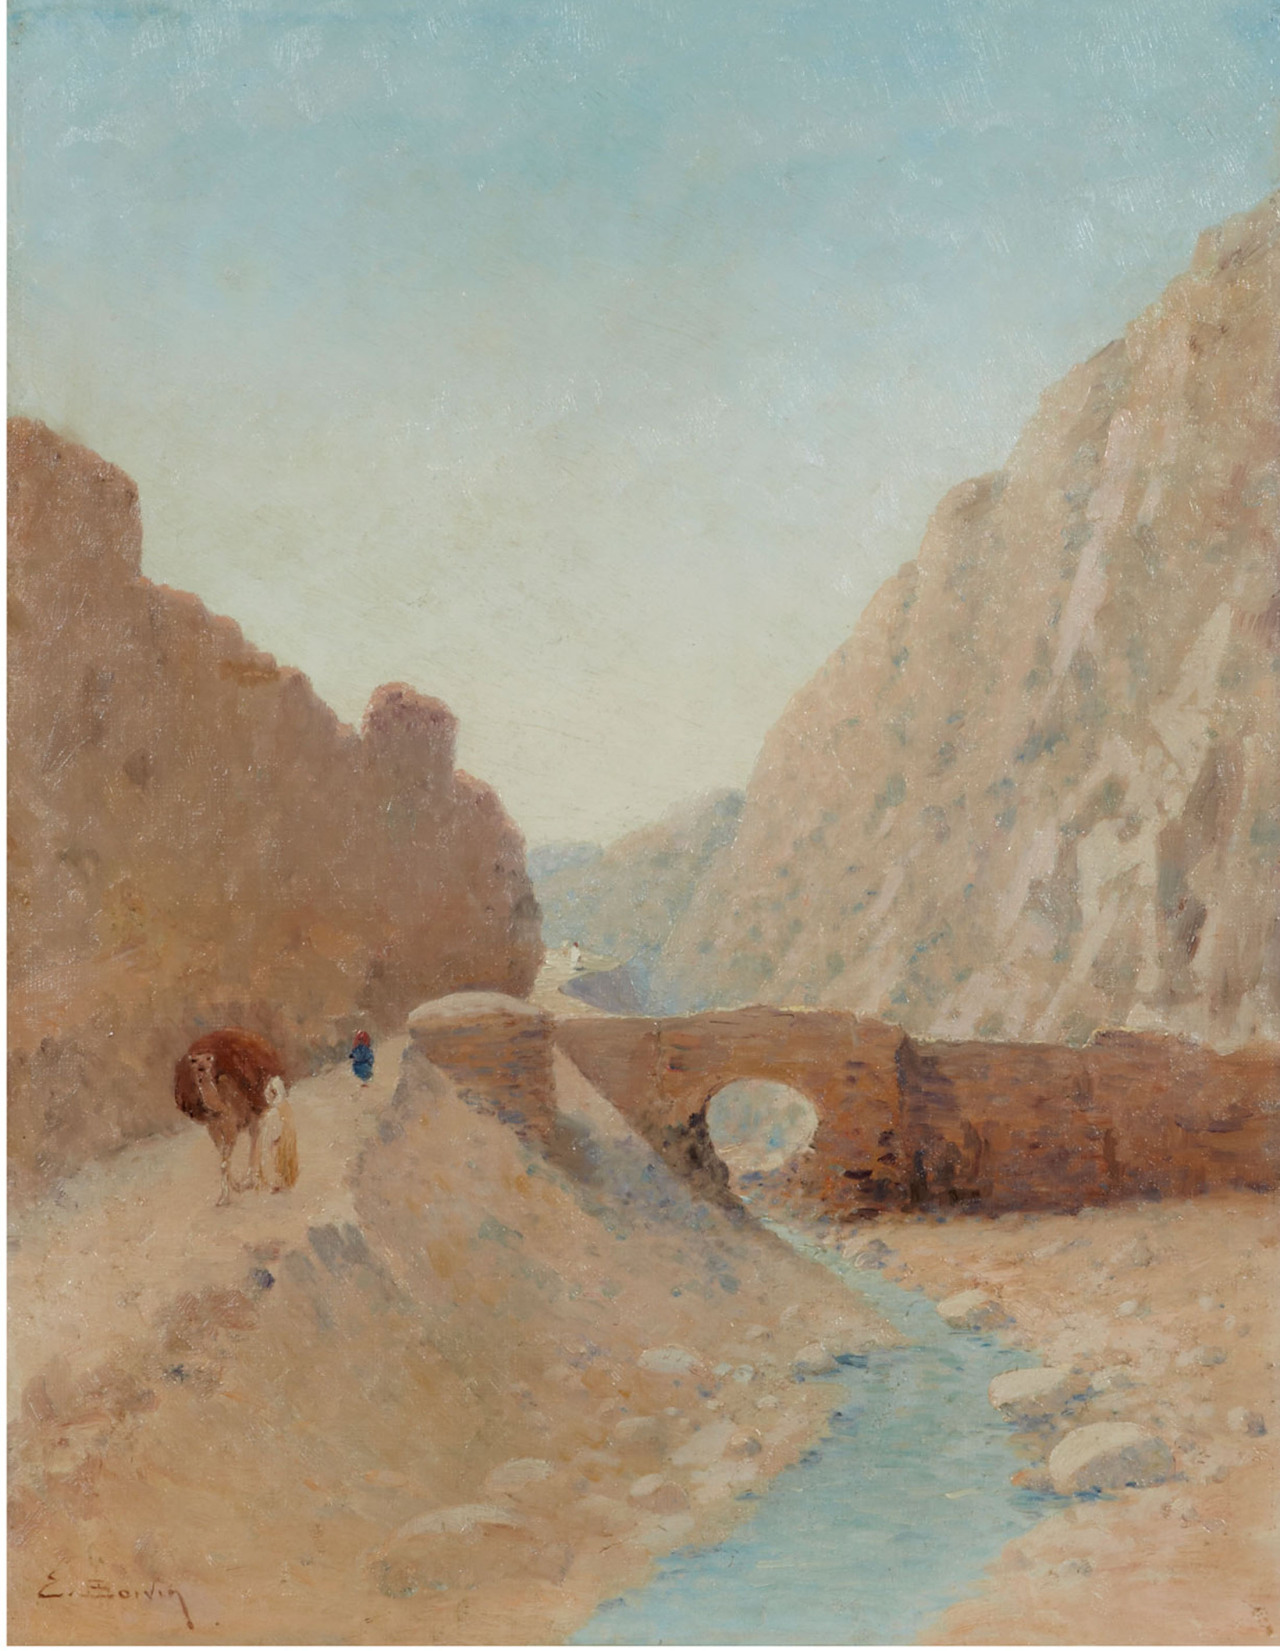 Emile BOIVIN (1846-1920)
Début d'une caravanne longeant l'Oued
Huile sur toile signée en bas à gauche “ E. Boivin”
H: 60.0 x L: 47.0 cm -